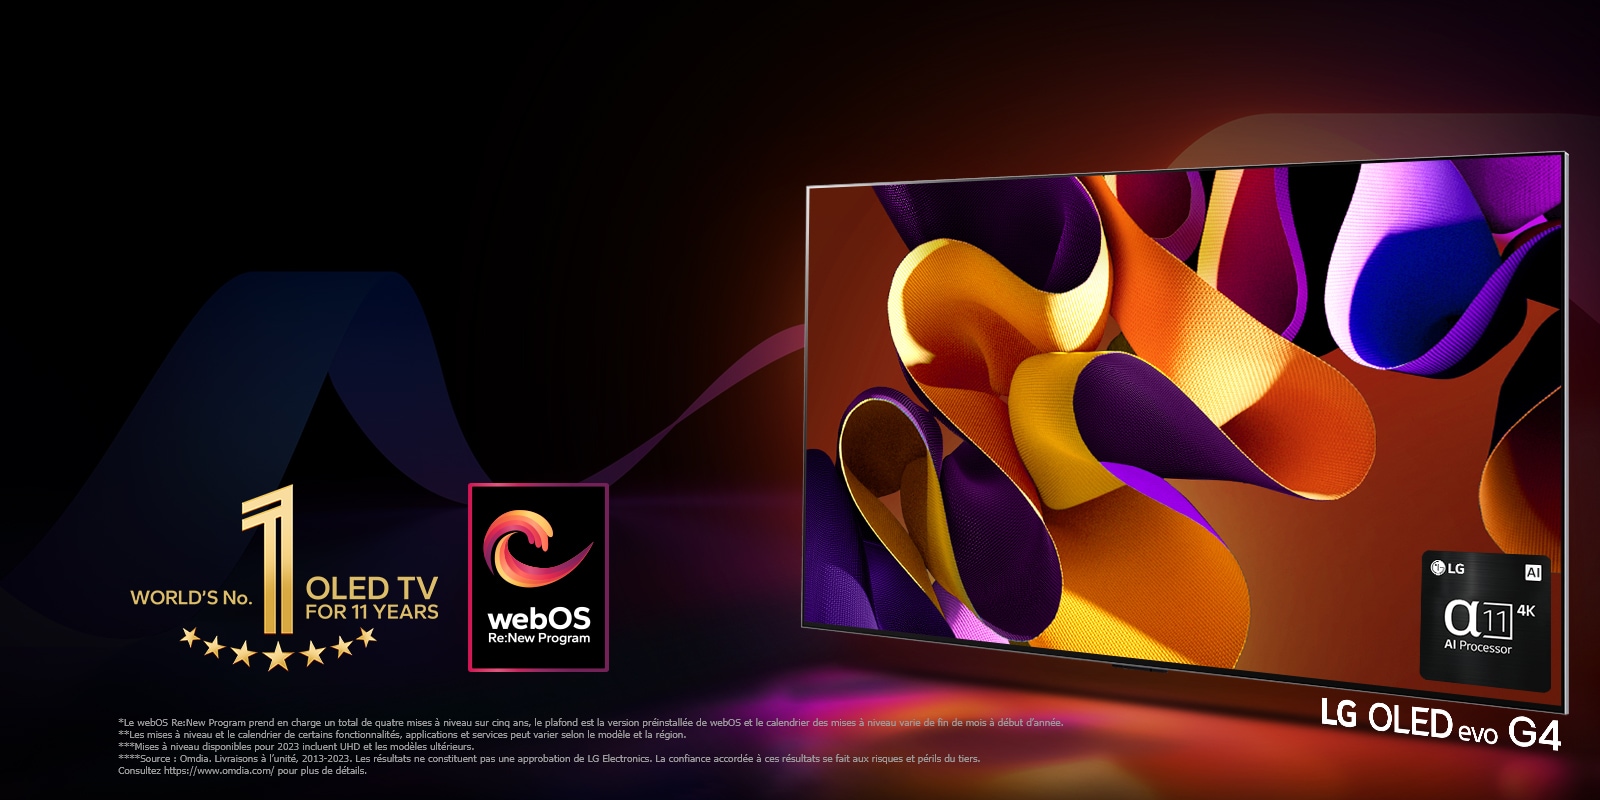 Un LG OLED evo TV G4 affiche une œuvre d’art abstraite colorée à l’écran sur un fond noir avec des tourbillons discrets de couleur. Une lumière rayonne de l’écran et dessine des ombres colorées en dessous. Le processeur IA alpha 11 4K se trouve dans le coin inférieur droit de l’écran du téléviseur. L’emblème OLED TV 11 ans numéro 1 mondial et le logo du programme webOS Re:New sont sur l’image. Une notice indique : « Le webOS Re:New Program prend en charge un total de quatre mises à niveau sur cinq ans, le plafond est la version préinstallée de webOS et le calendrier des mises à niveau varie de fin de mois à début d’année. »  « Les mises à niveau et le calendrier de certains fonctionnalités, applications et services peut varier selon le modèle et la région. »  « Mises à niveau disponibles pour 2023 incluent UHD et les modèles ultérieurs. » « Source : Omdia. Livraisons à l’unité, 2013-2023. Les résultats ne constituent pas une approbation de LG Electronics. La confiance accordée à ces résultats se fait aux risques et périls du tiers. Consultez https://www.omdia.com/ pour plus de détails. »